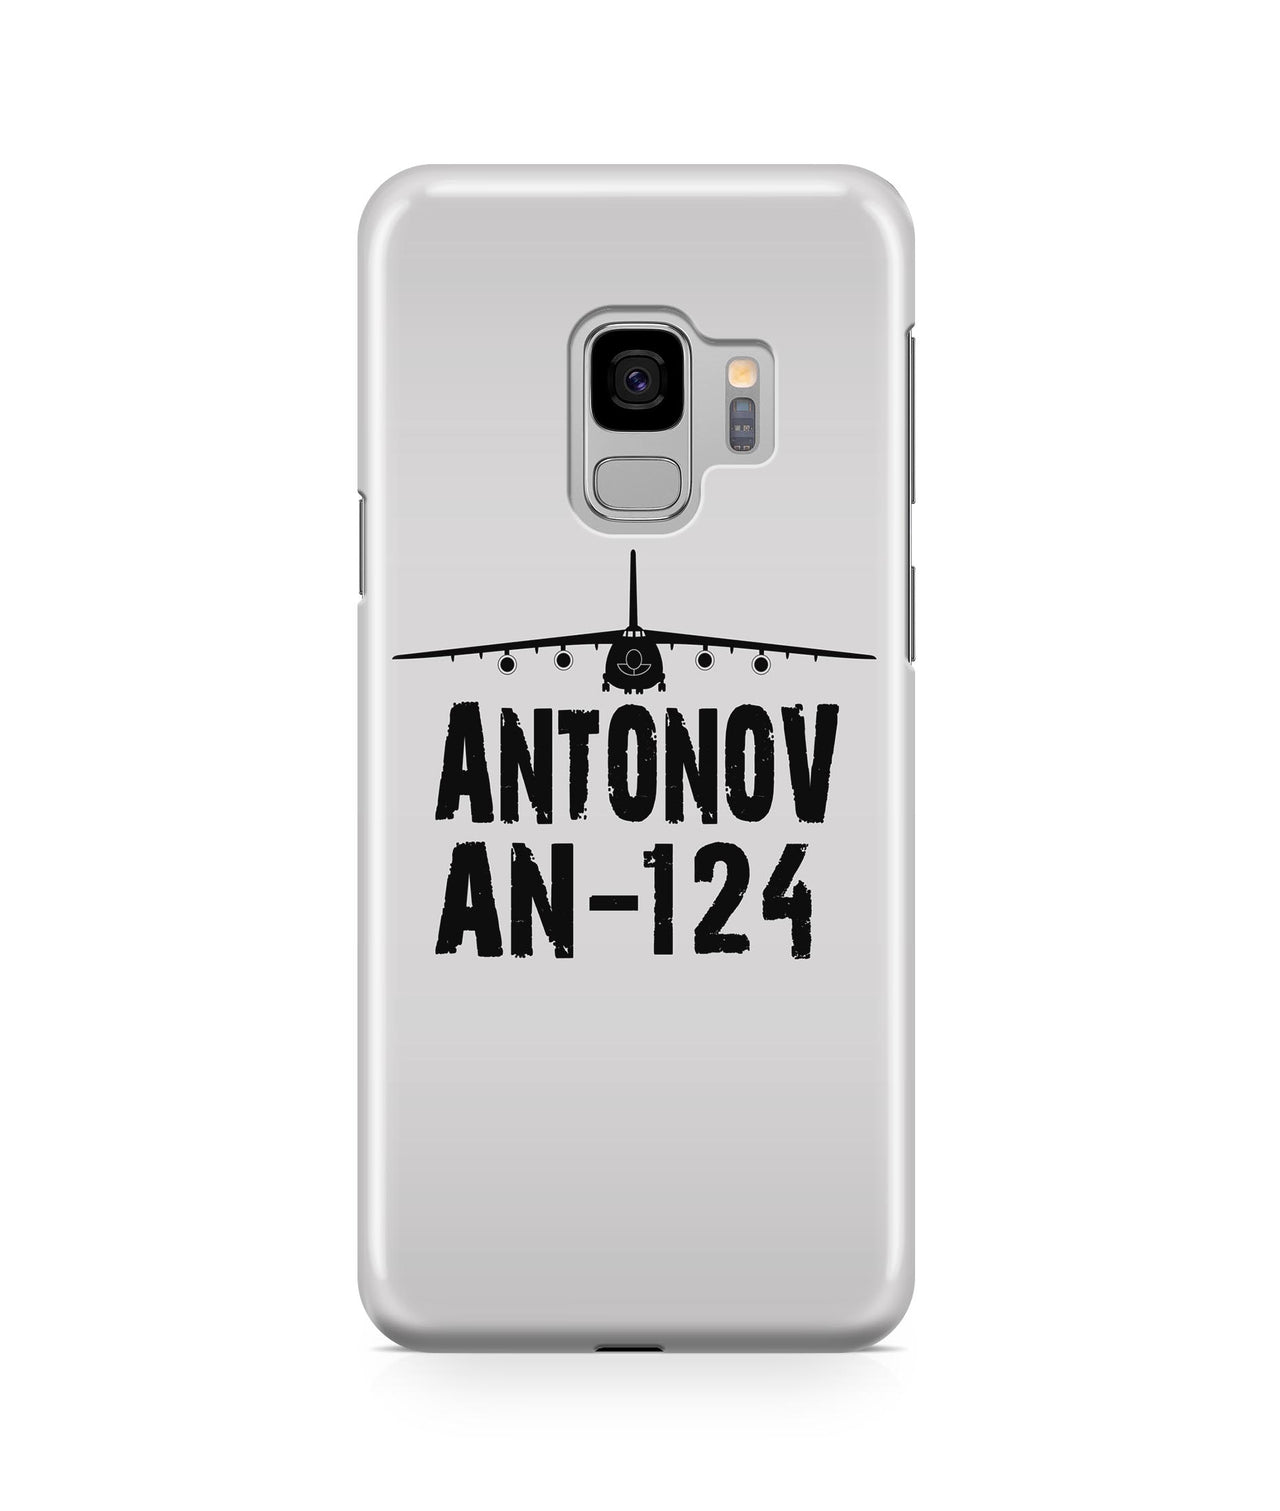 Antonov AN-124 Plane & Designed Samsung J Cases